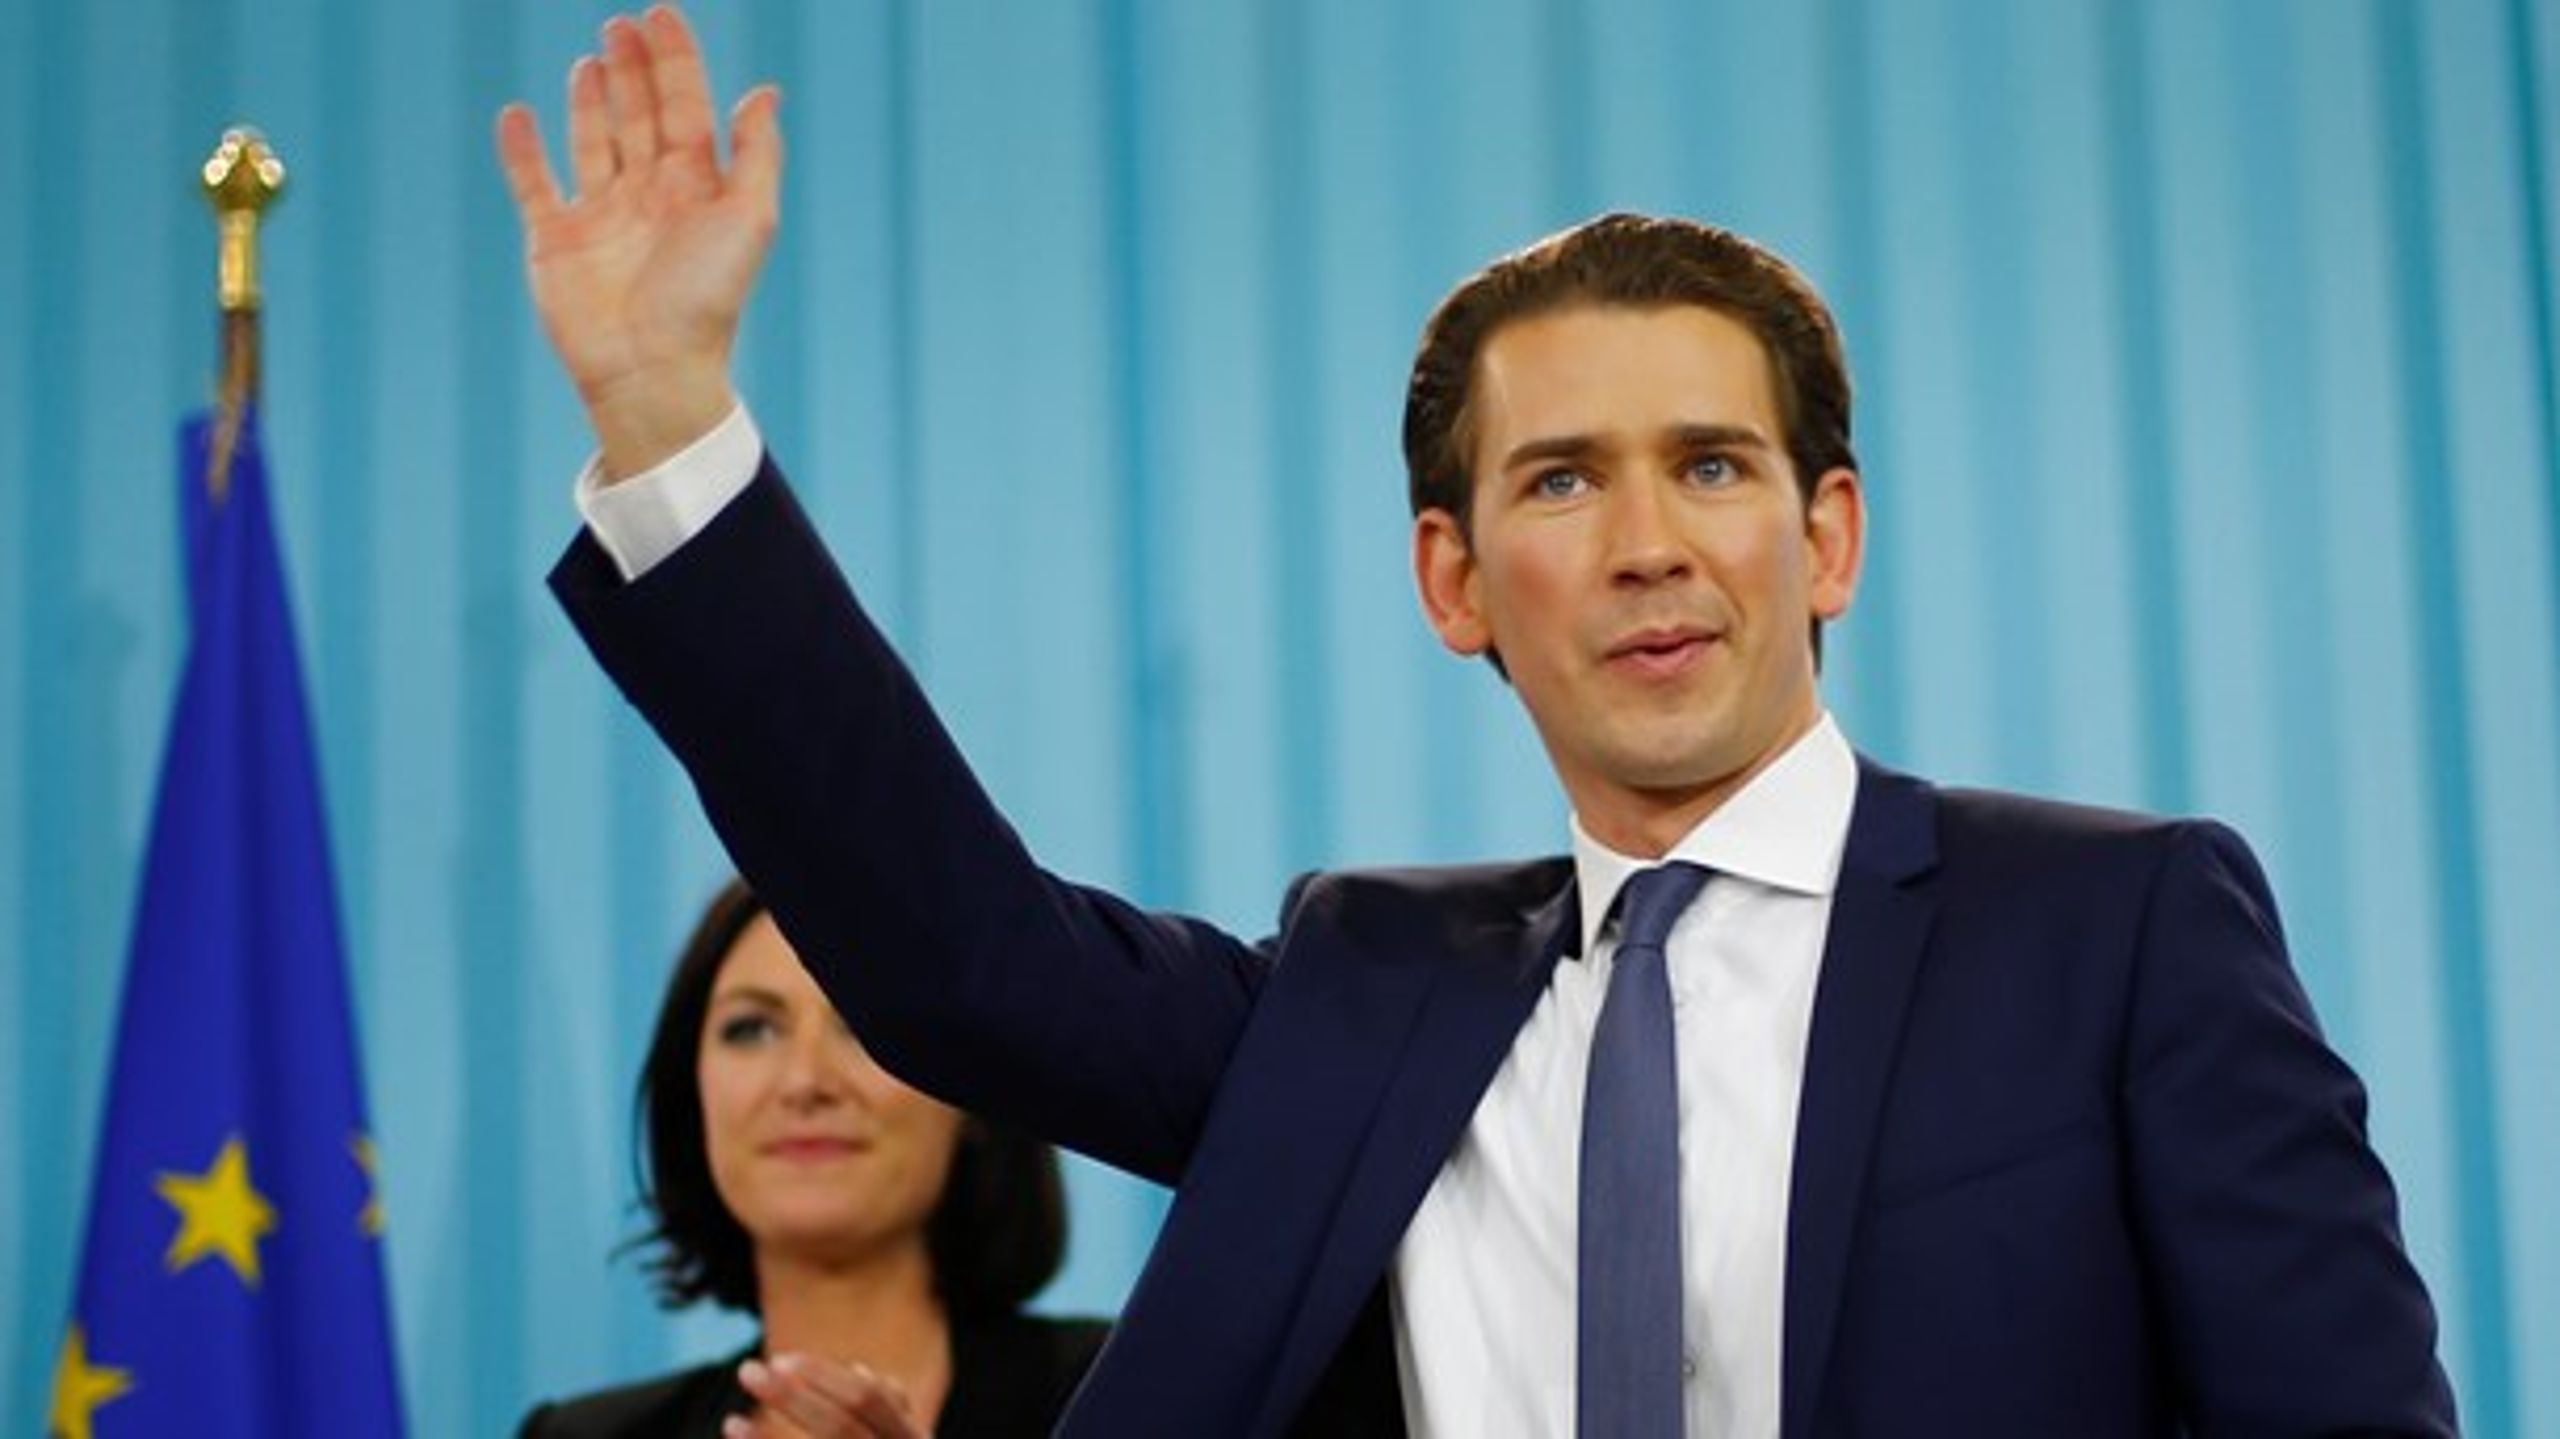 Sebastian Kurz, Østrigs nyvalgte forbundskansler, indleder et opgør med EU på børnecheck-området. Et opgør, der tiltrækker Danmarks interesse.